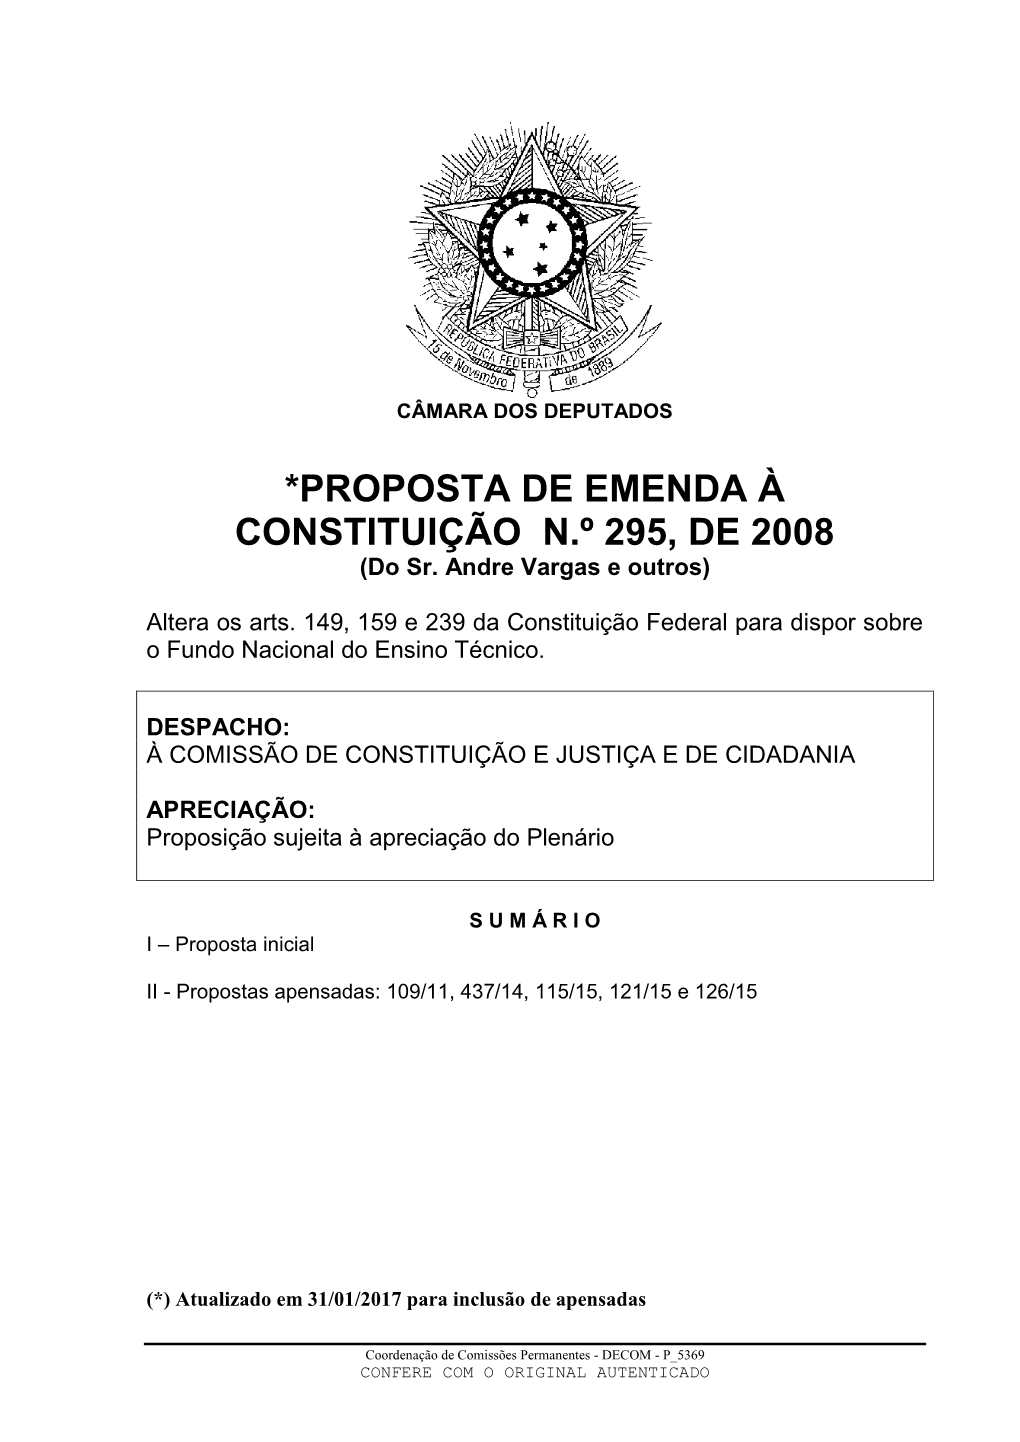 *PROPOSTA DE EMENDA À CONSTITUIÇÃO N.º 295, DE 2008 (Do Sr